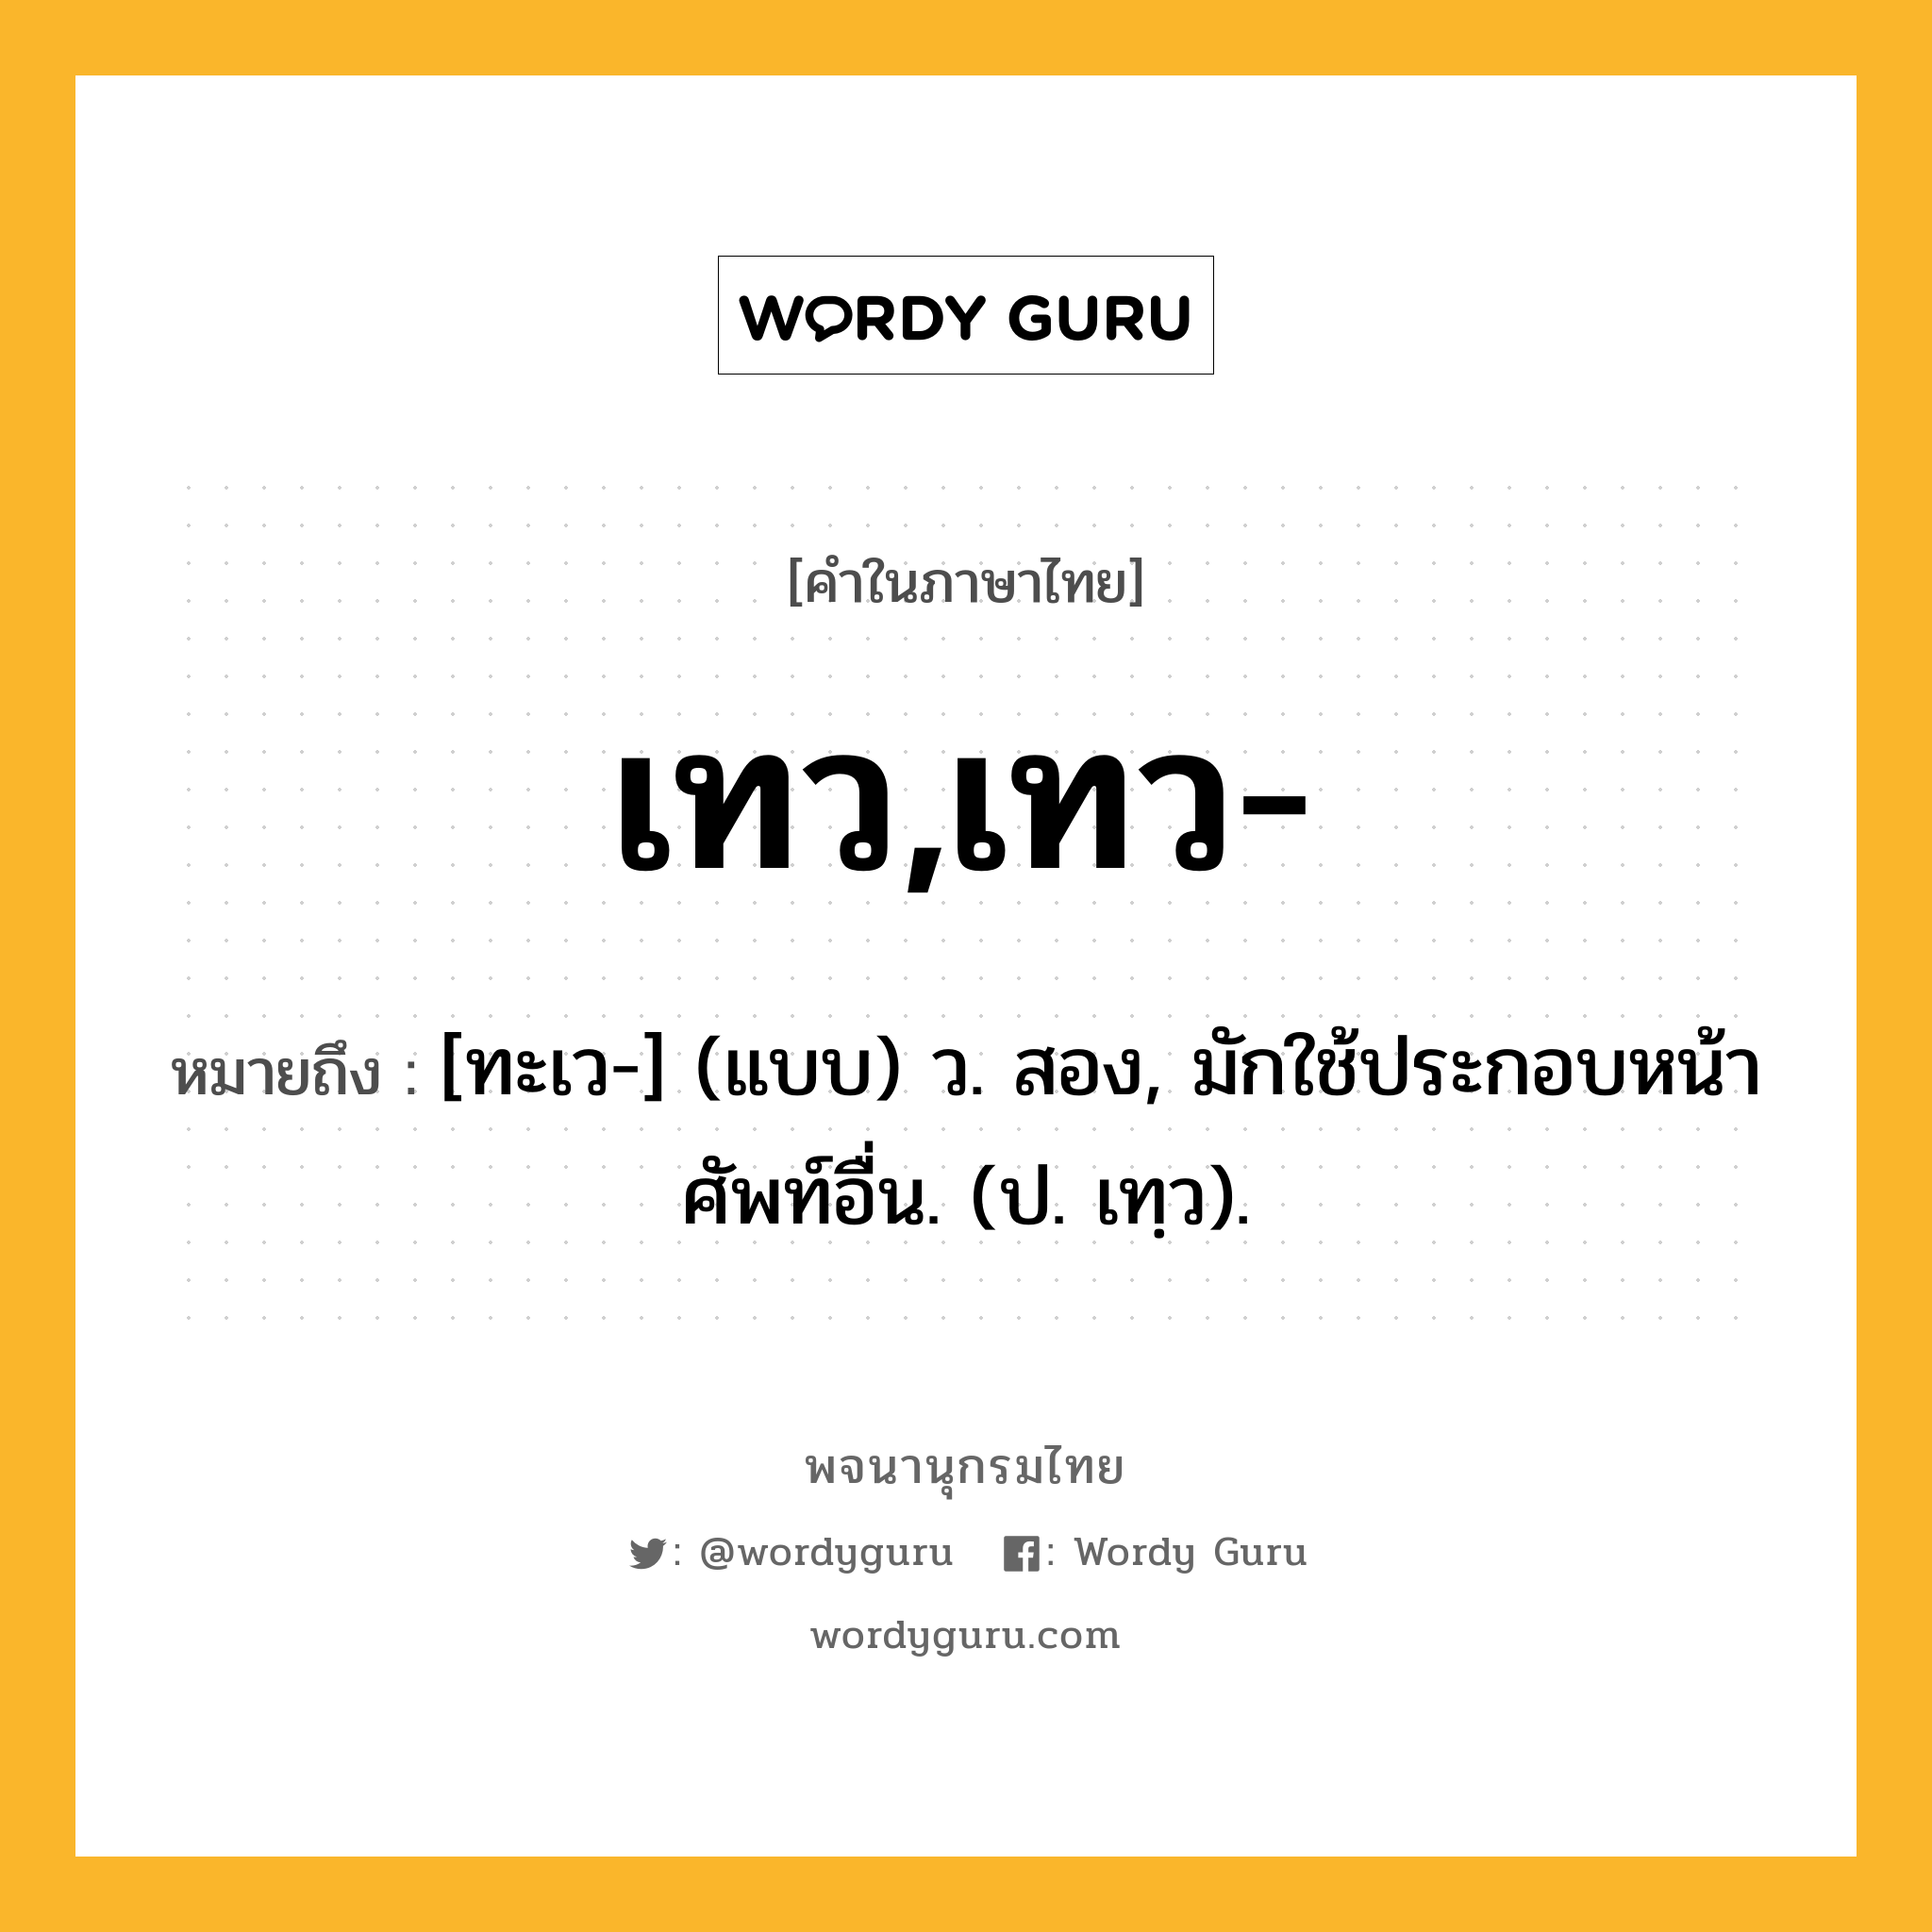 เทว,เทว- หมายถึงอะไร?, คำในภาษาไทย เทว,เทว- หมายถึง [ทะเว-] (แบบ) ว. สอง, มักใช้ประกอบหน้าศัพท์อื่น. (ป. เทฺว).